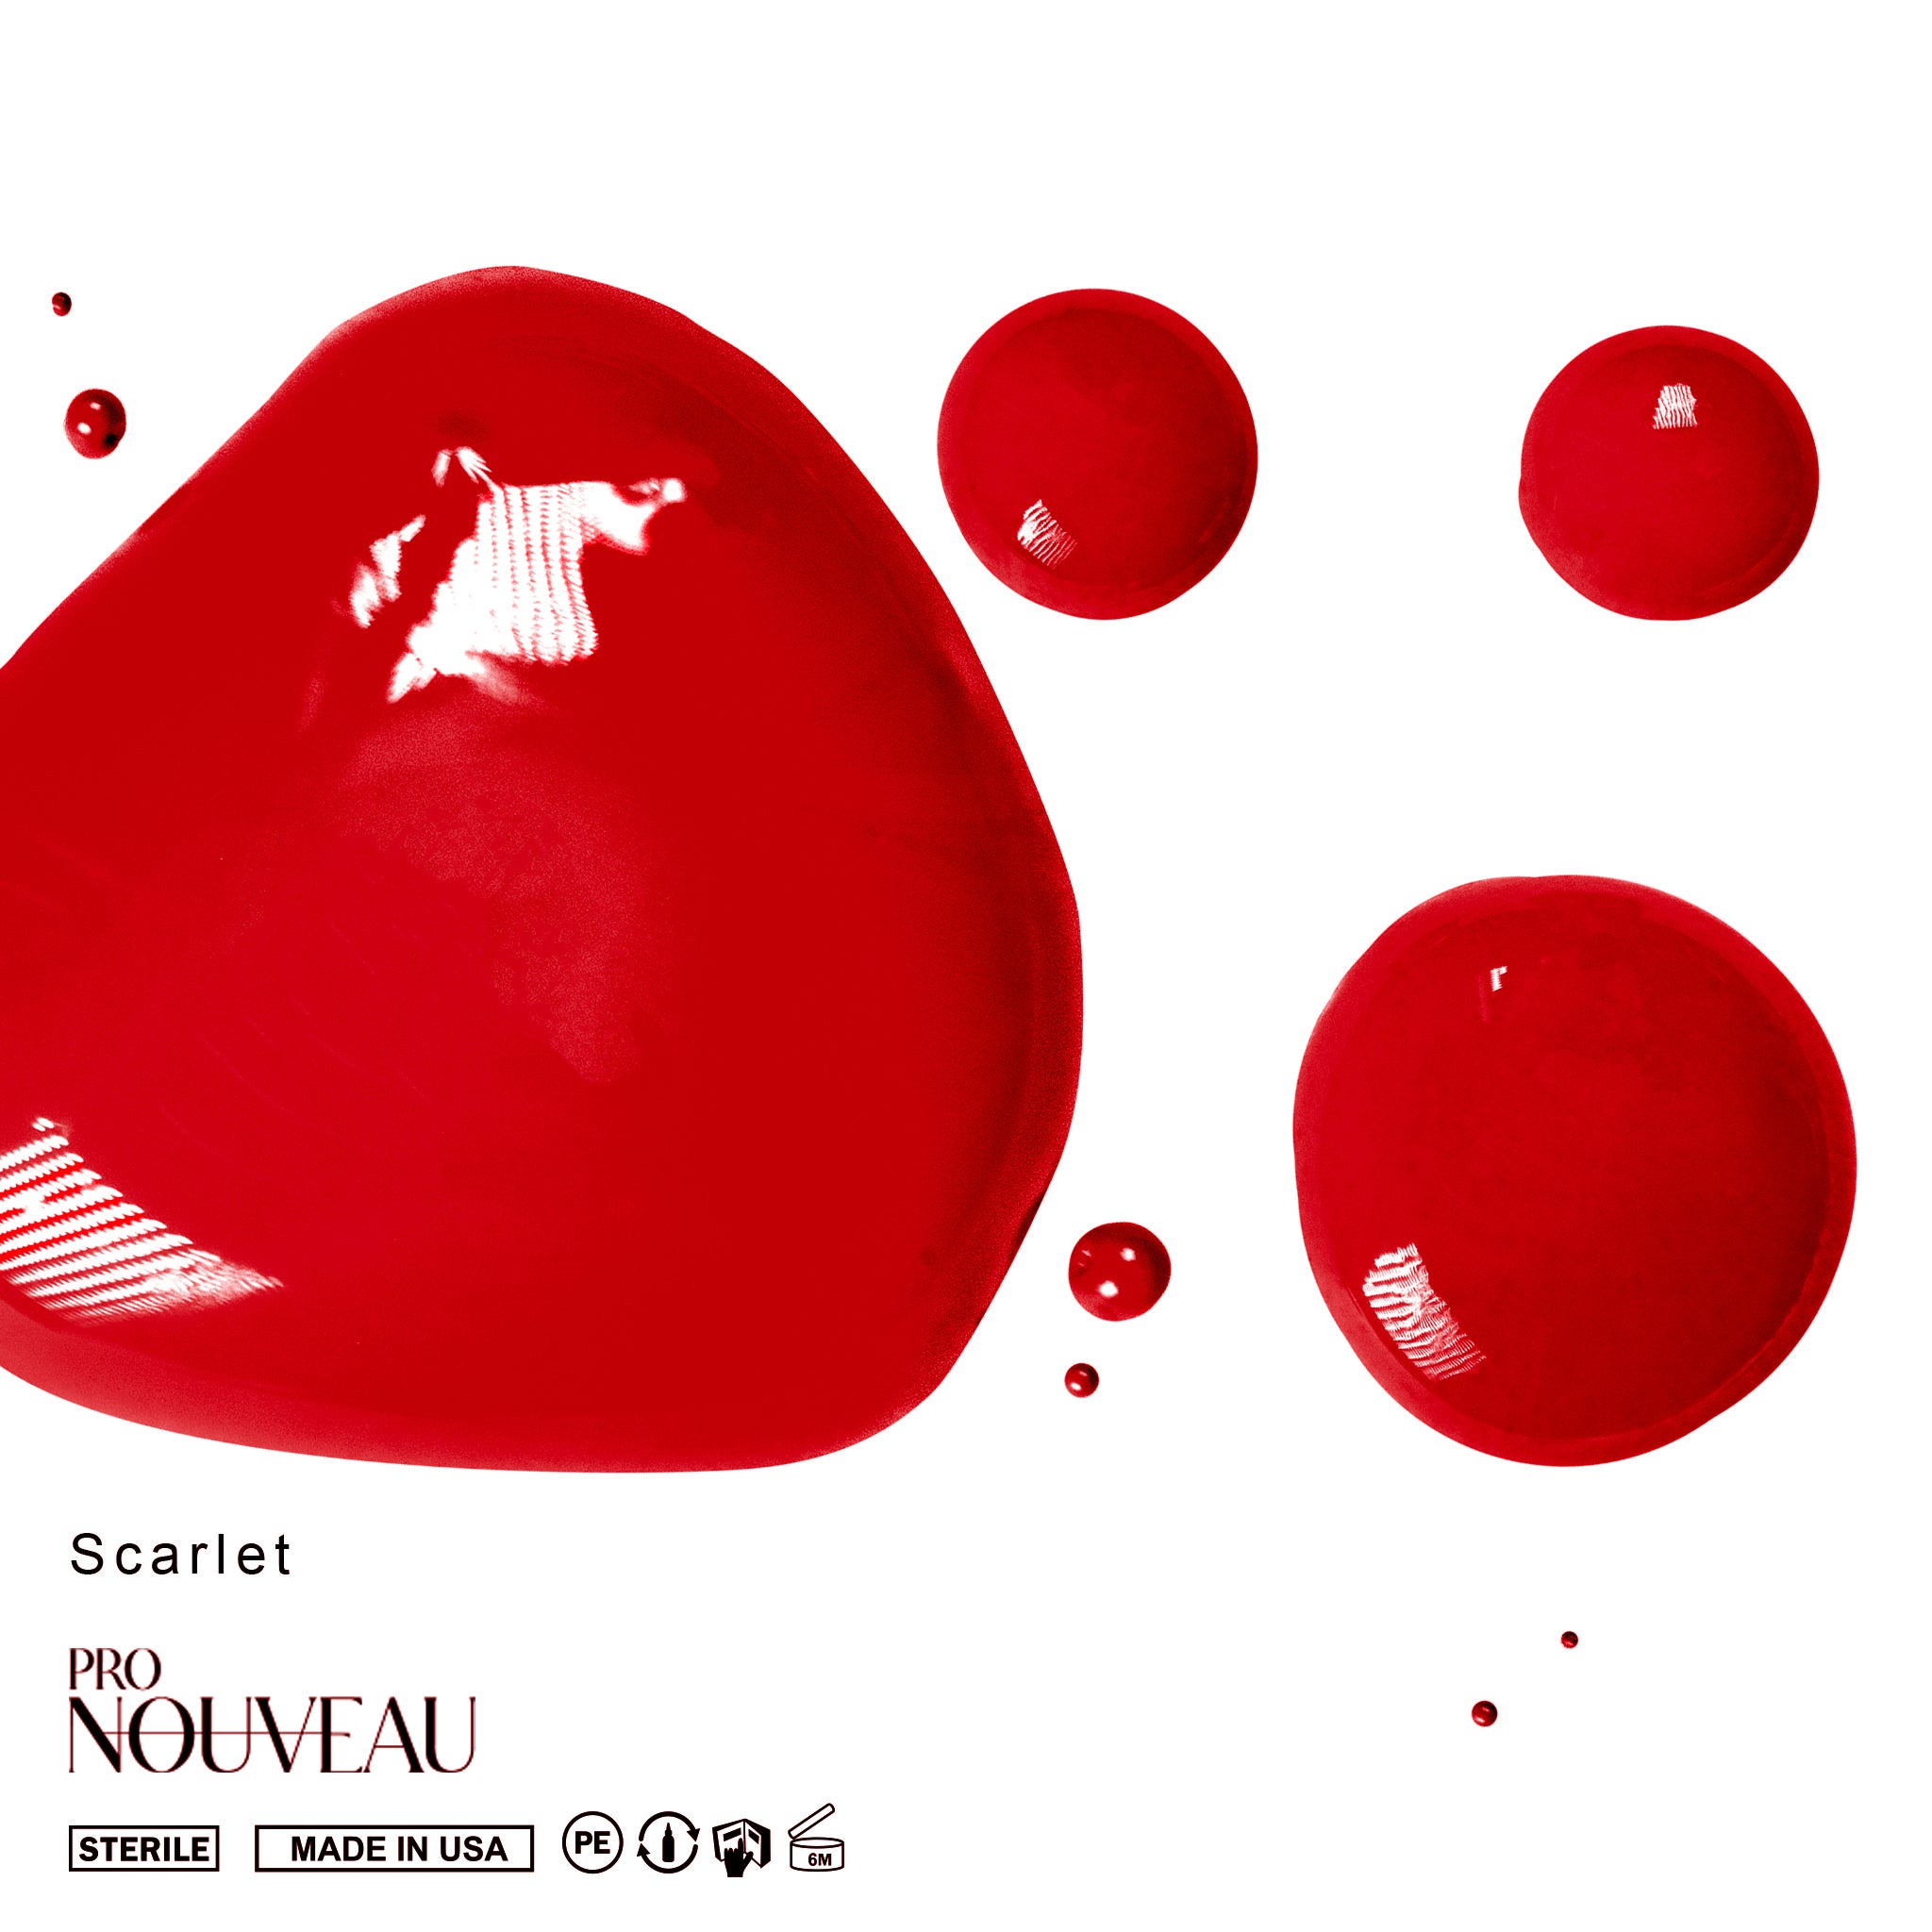 Pro Nouveau - Scarlet